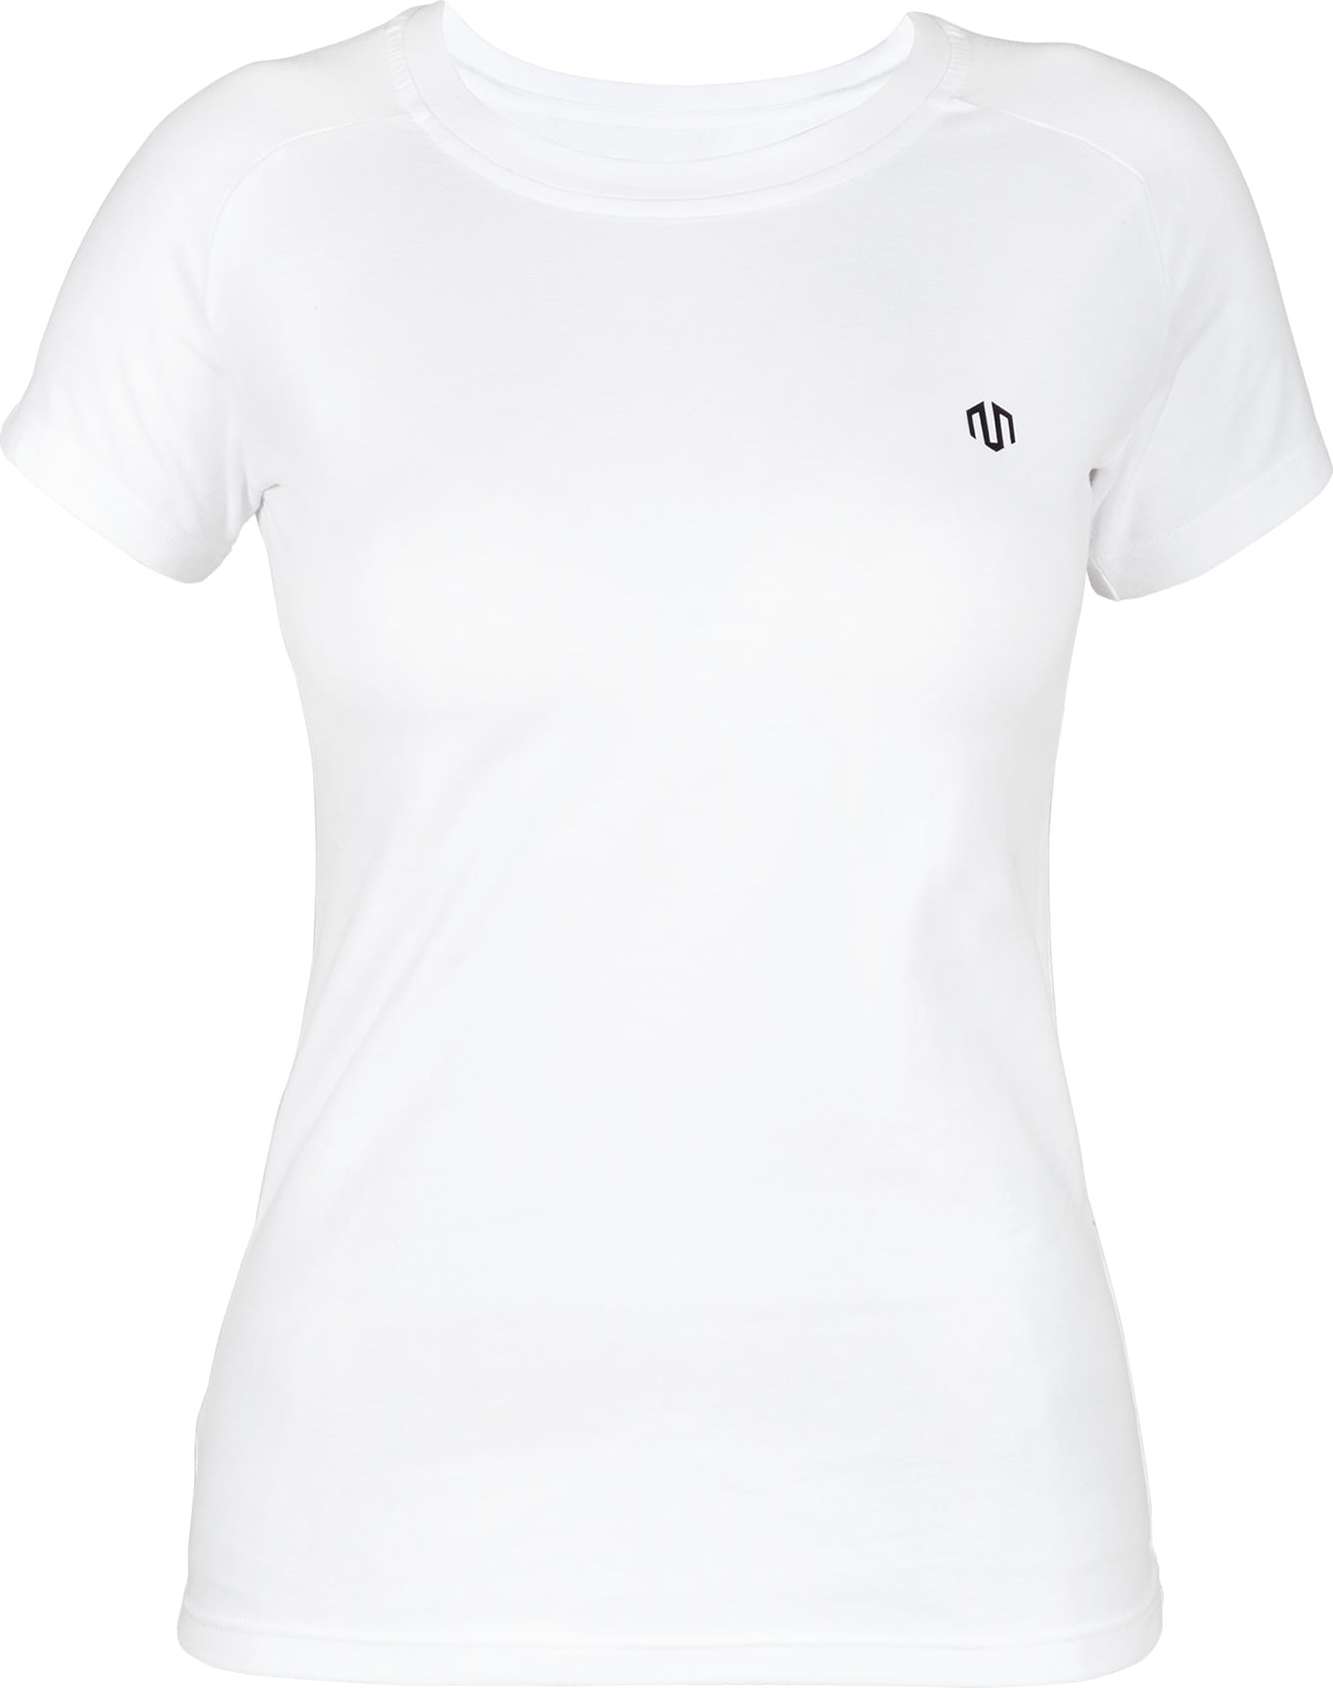 MOROTAI Funkční tričko bílá